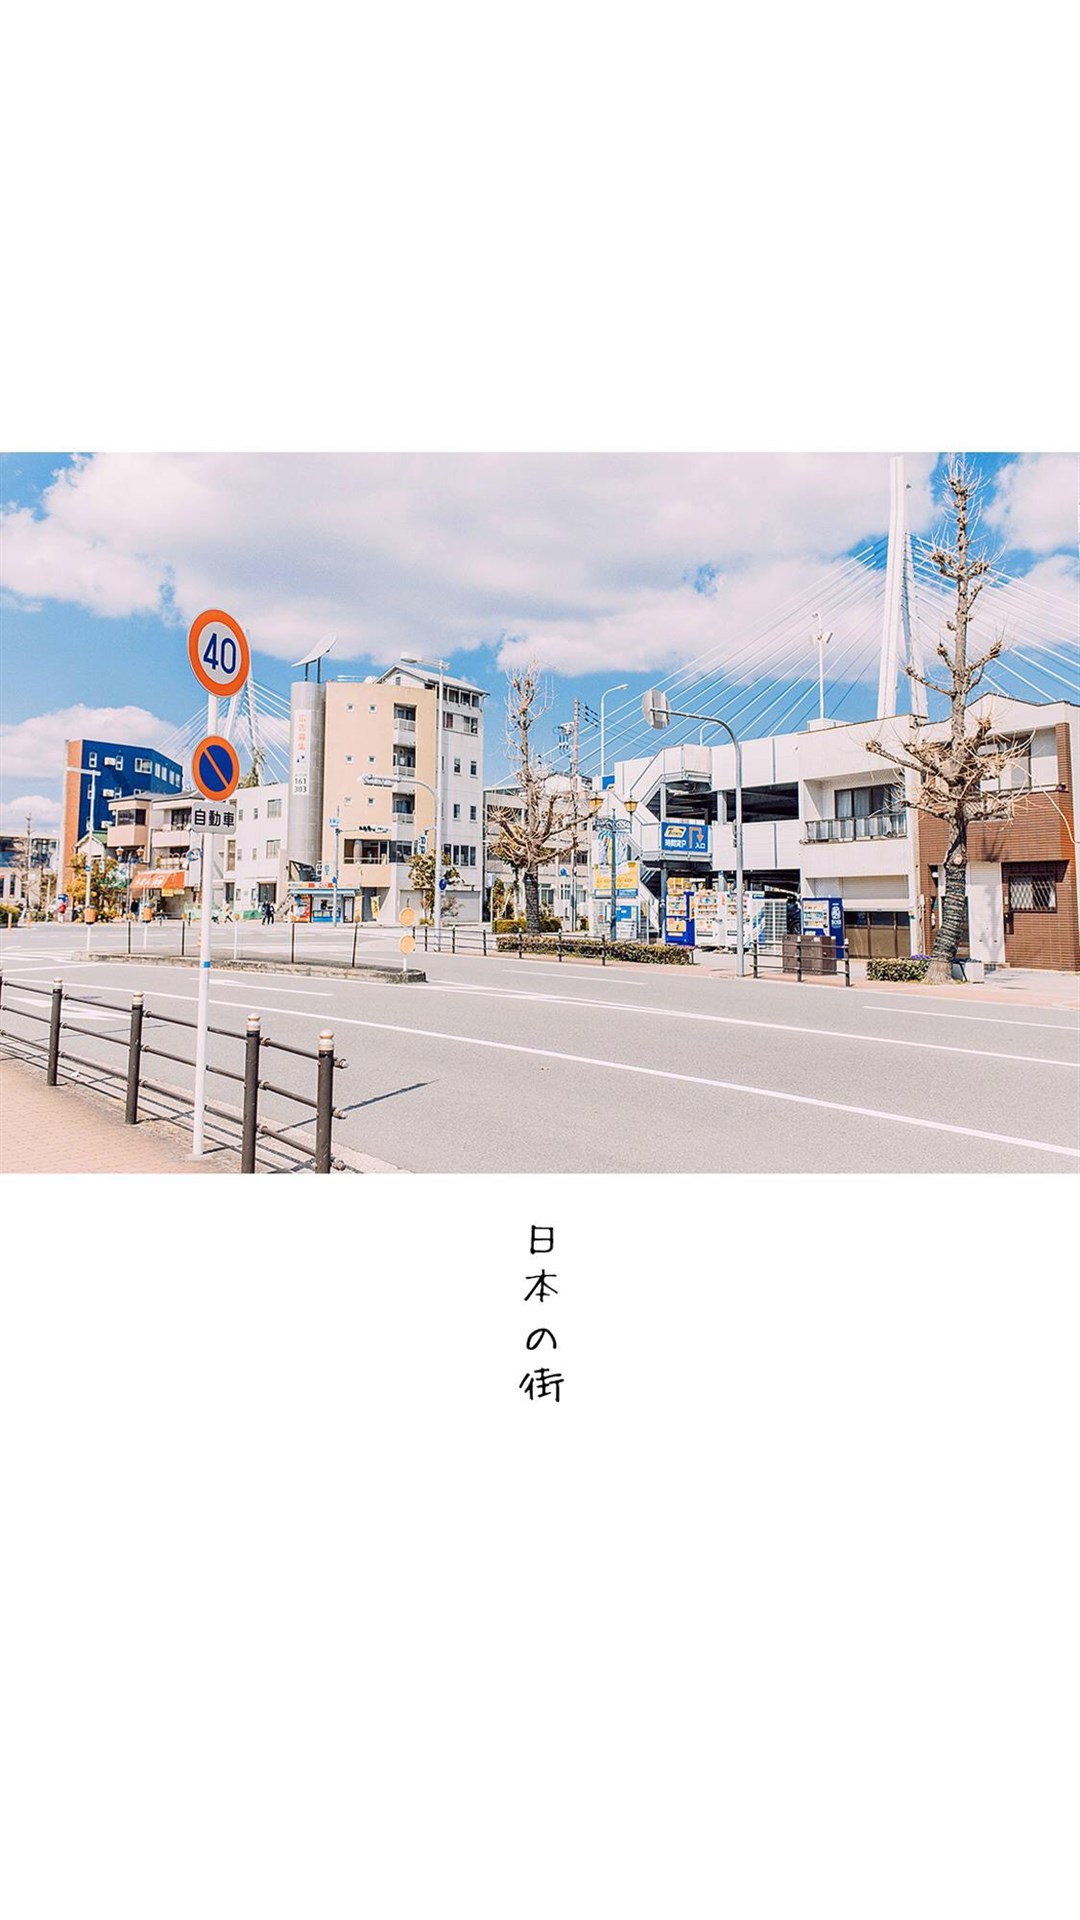 街景图片素材 清新简约日本街景风光手机壁纸(9)